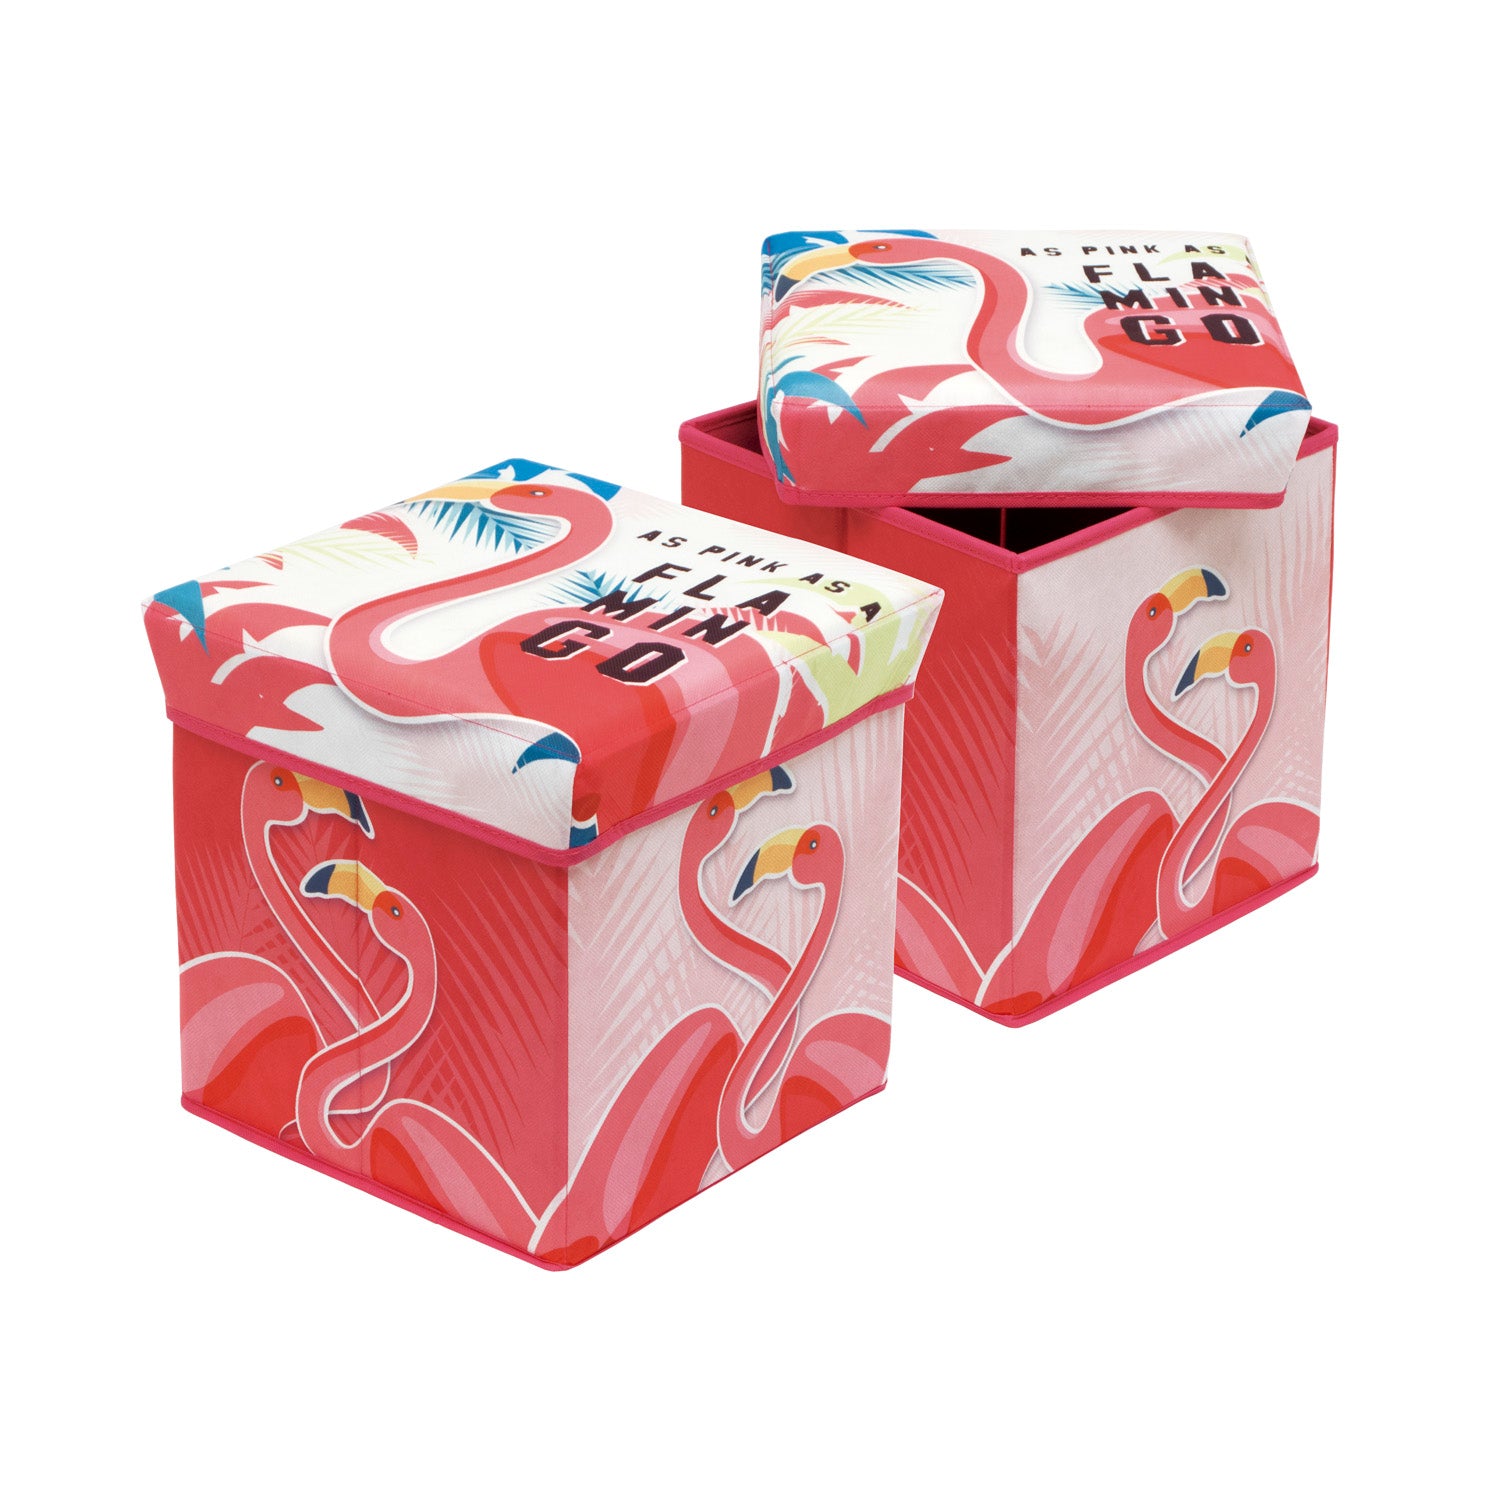 Flamingo Fabric Storage Bin With Stool by Zaska